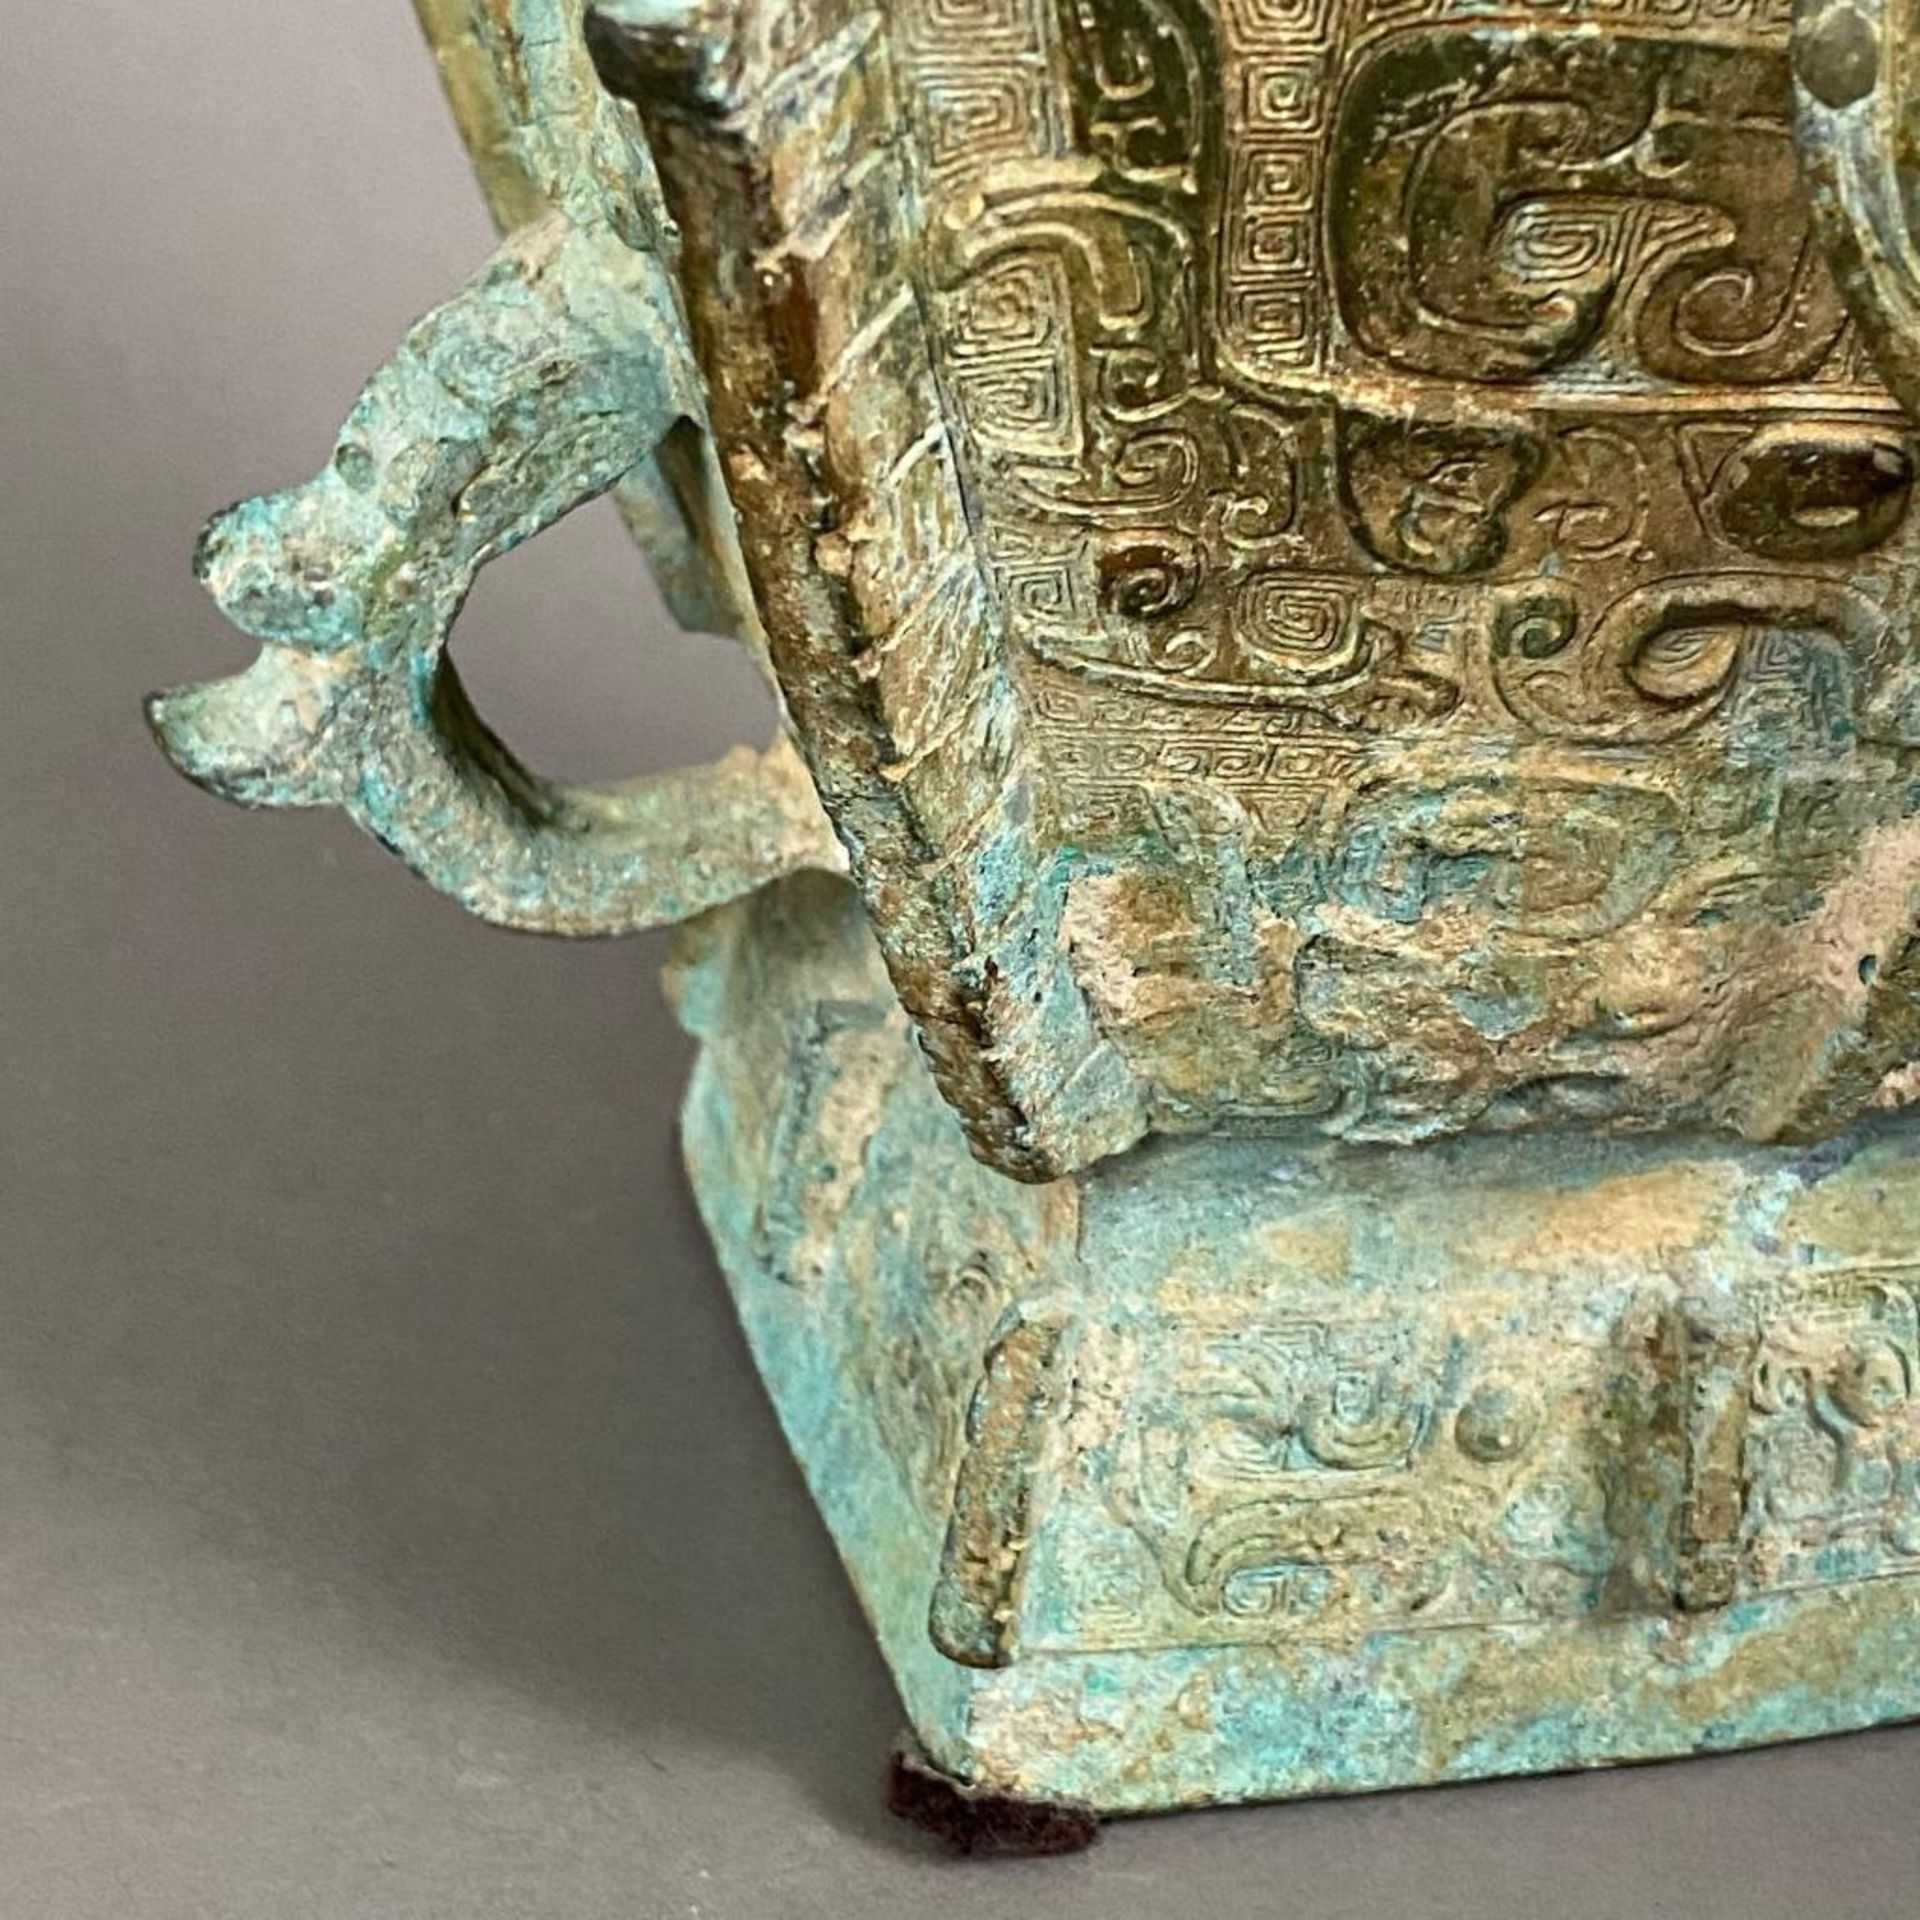 Fanghu-Vase im archaischen Stil - China, grün-braun patinierte Bronze, vierkantige gebauchte Form a - Image 9 of 10